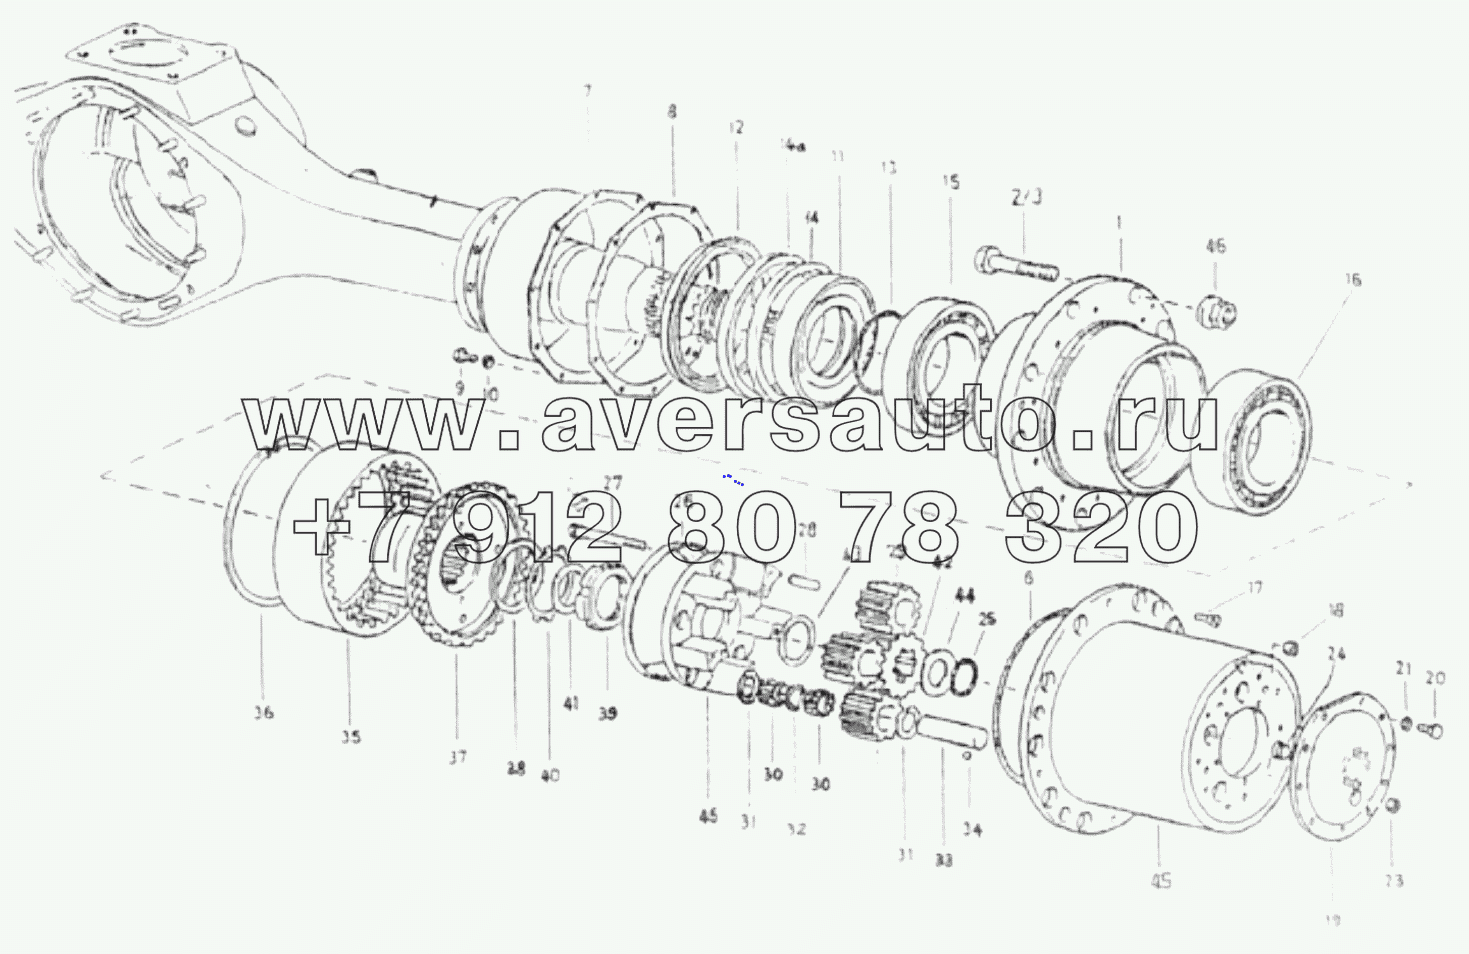  1S325125002H1 Intermediate axle (5.73, widened, cast steel)-hub reduction gear module